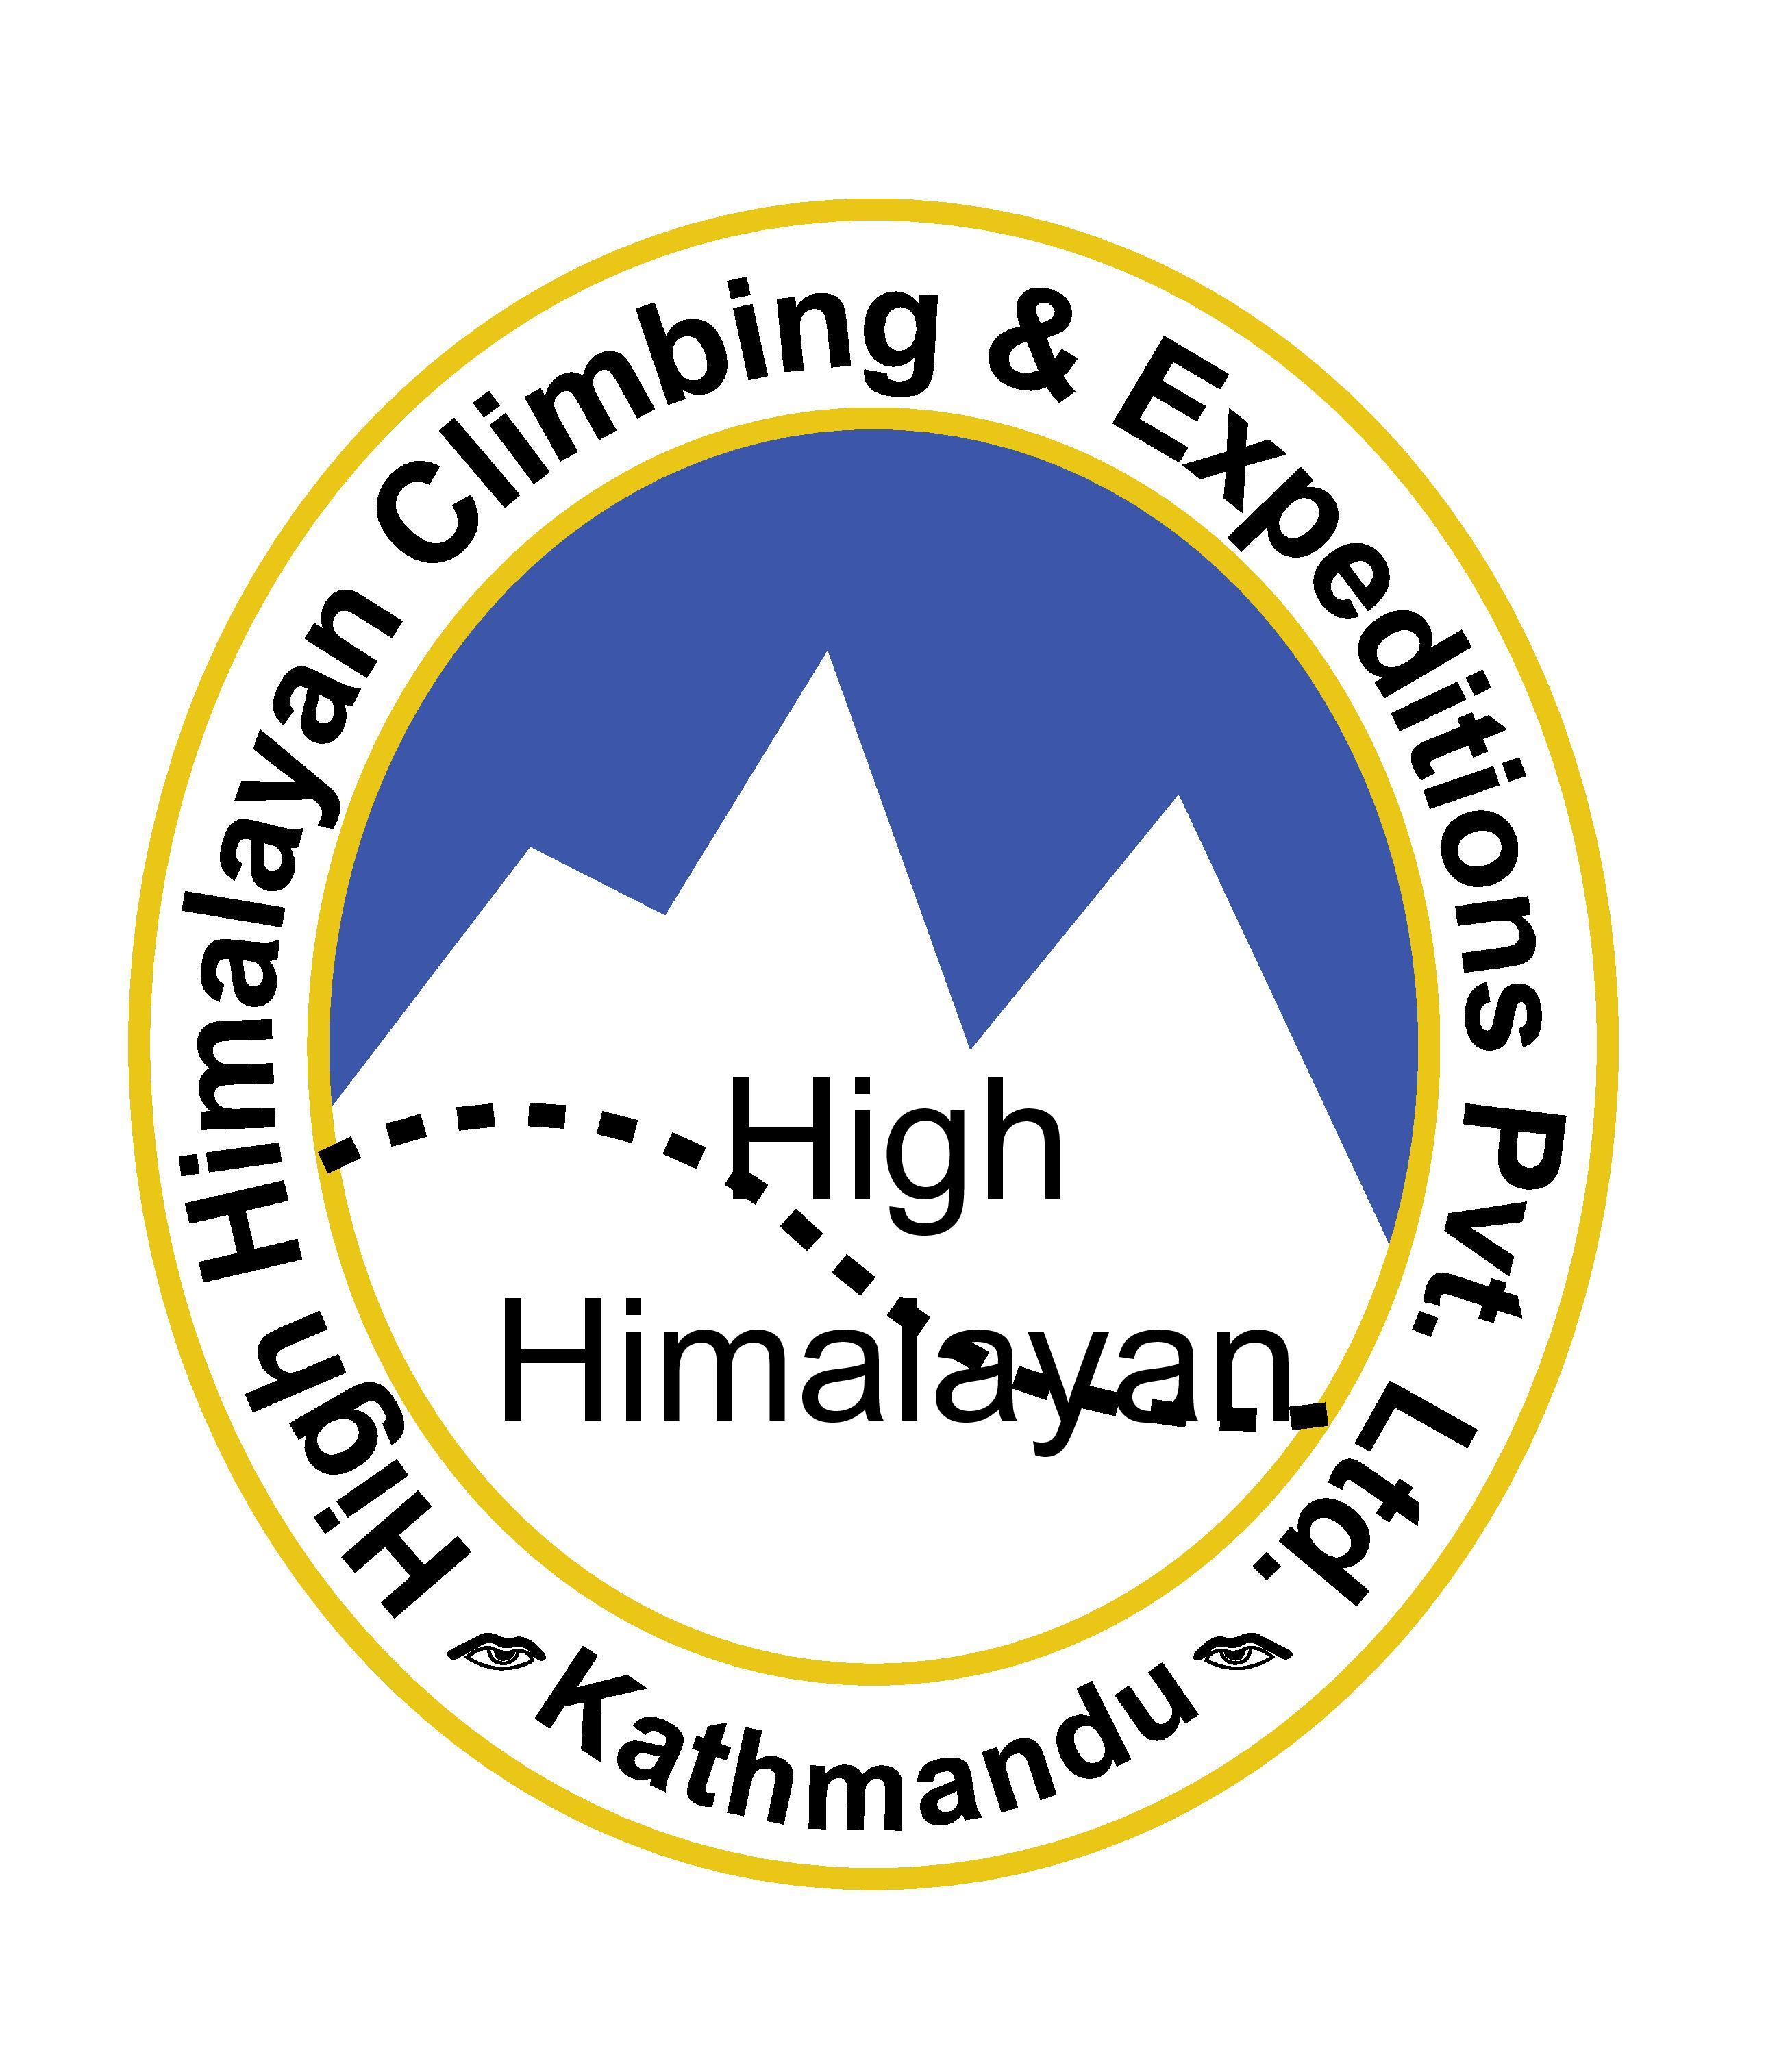 High Himalayan Climbing and Expeditions